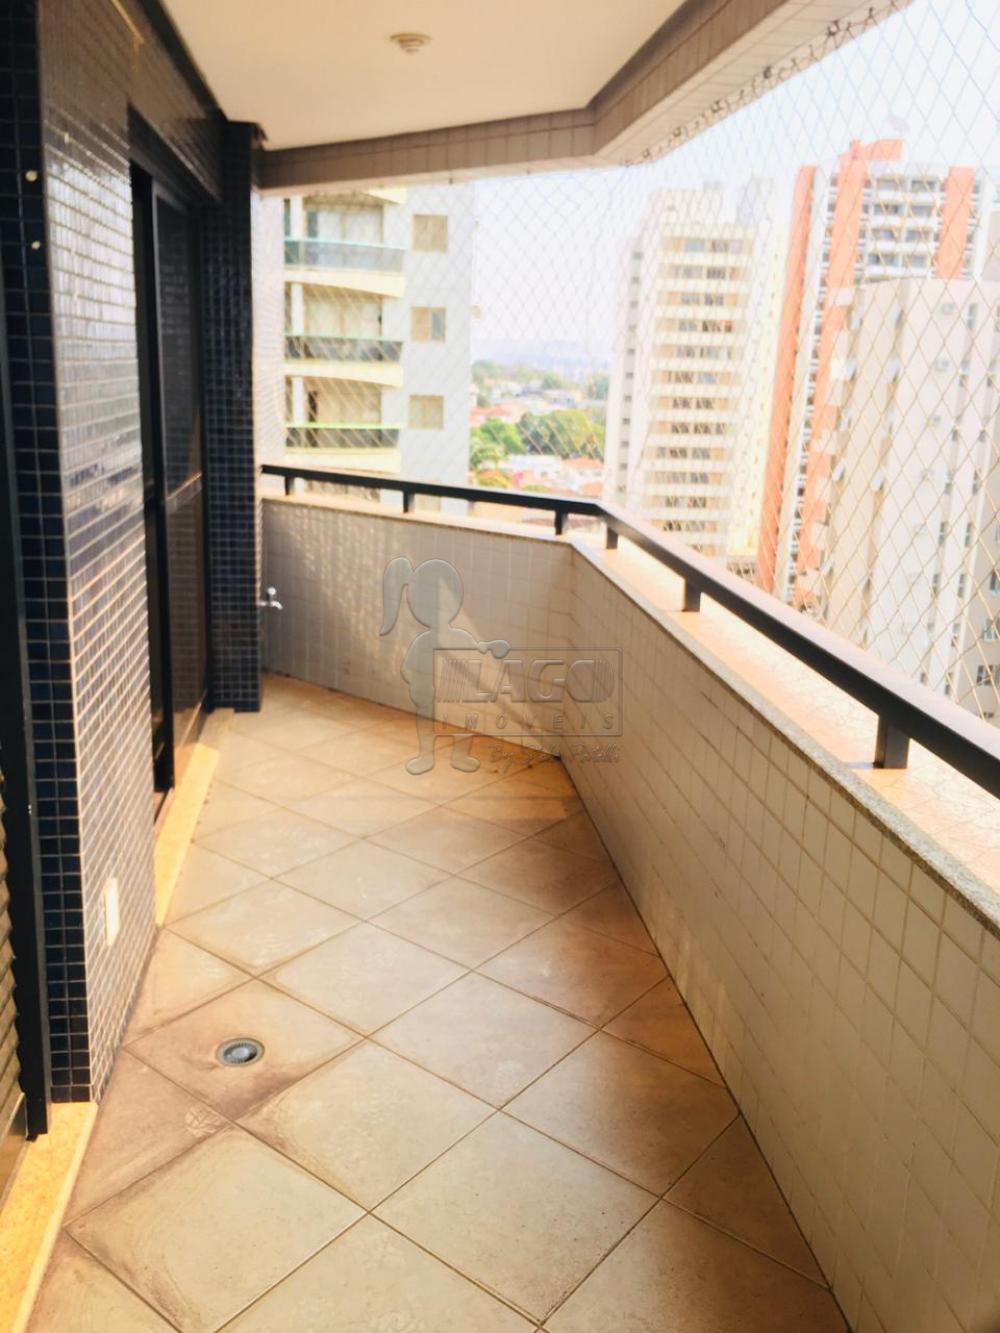 Alugar Apartamento / Padrão em Ribeirão Preto R$ 3.200,00 - Foto 3